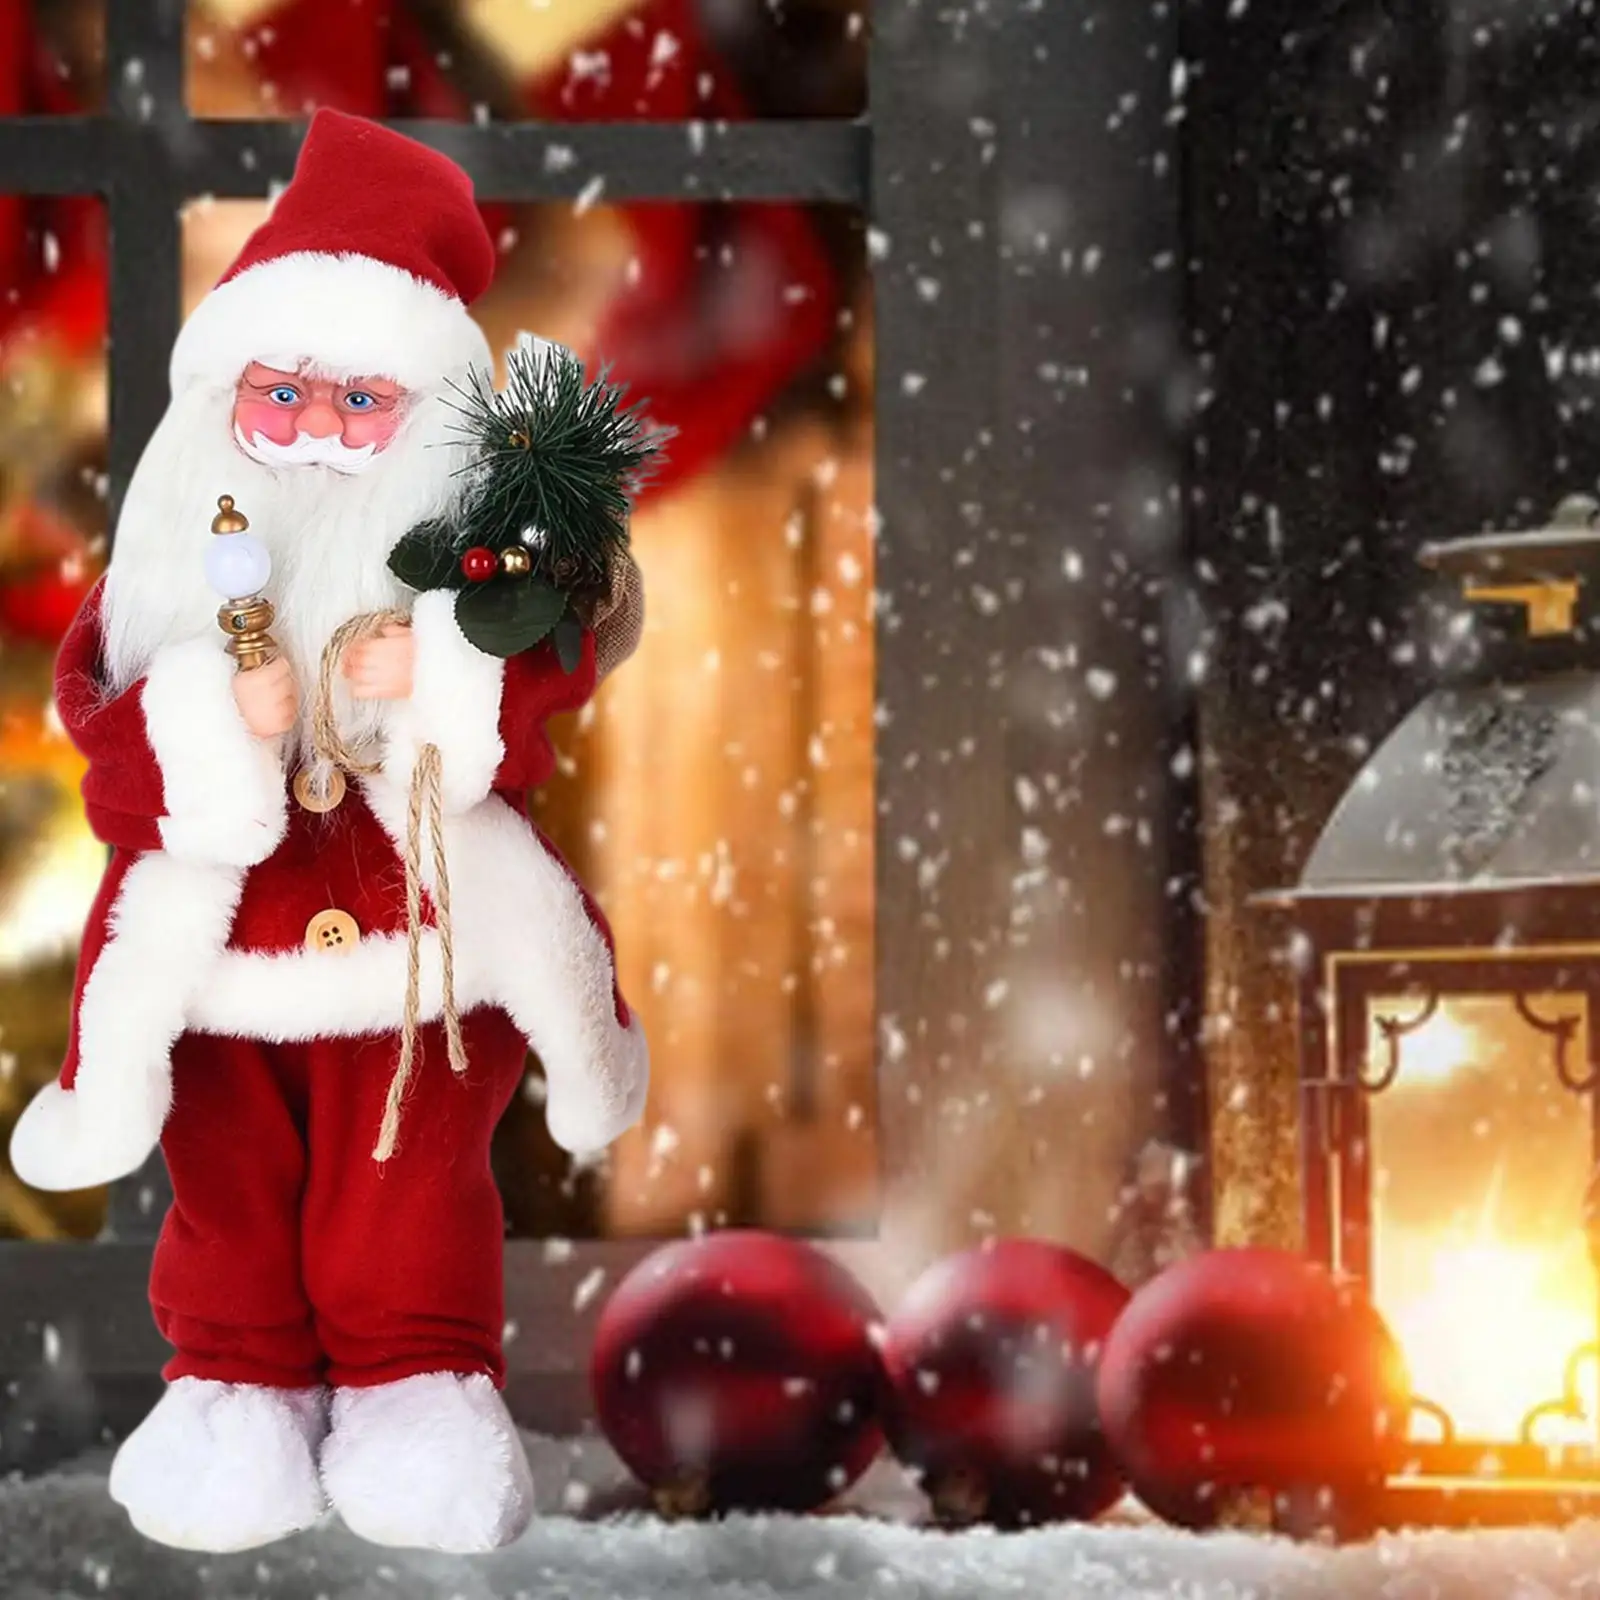 Electric Santa Claus Toy Wiggle Santa Swinging Singing Twerking Santa Claus for Children